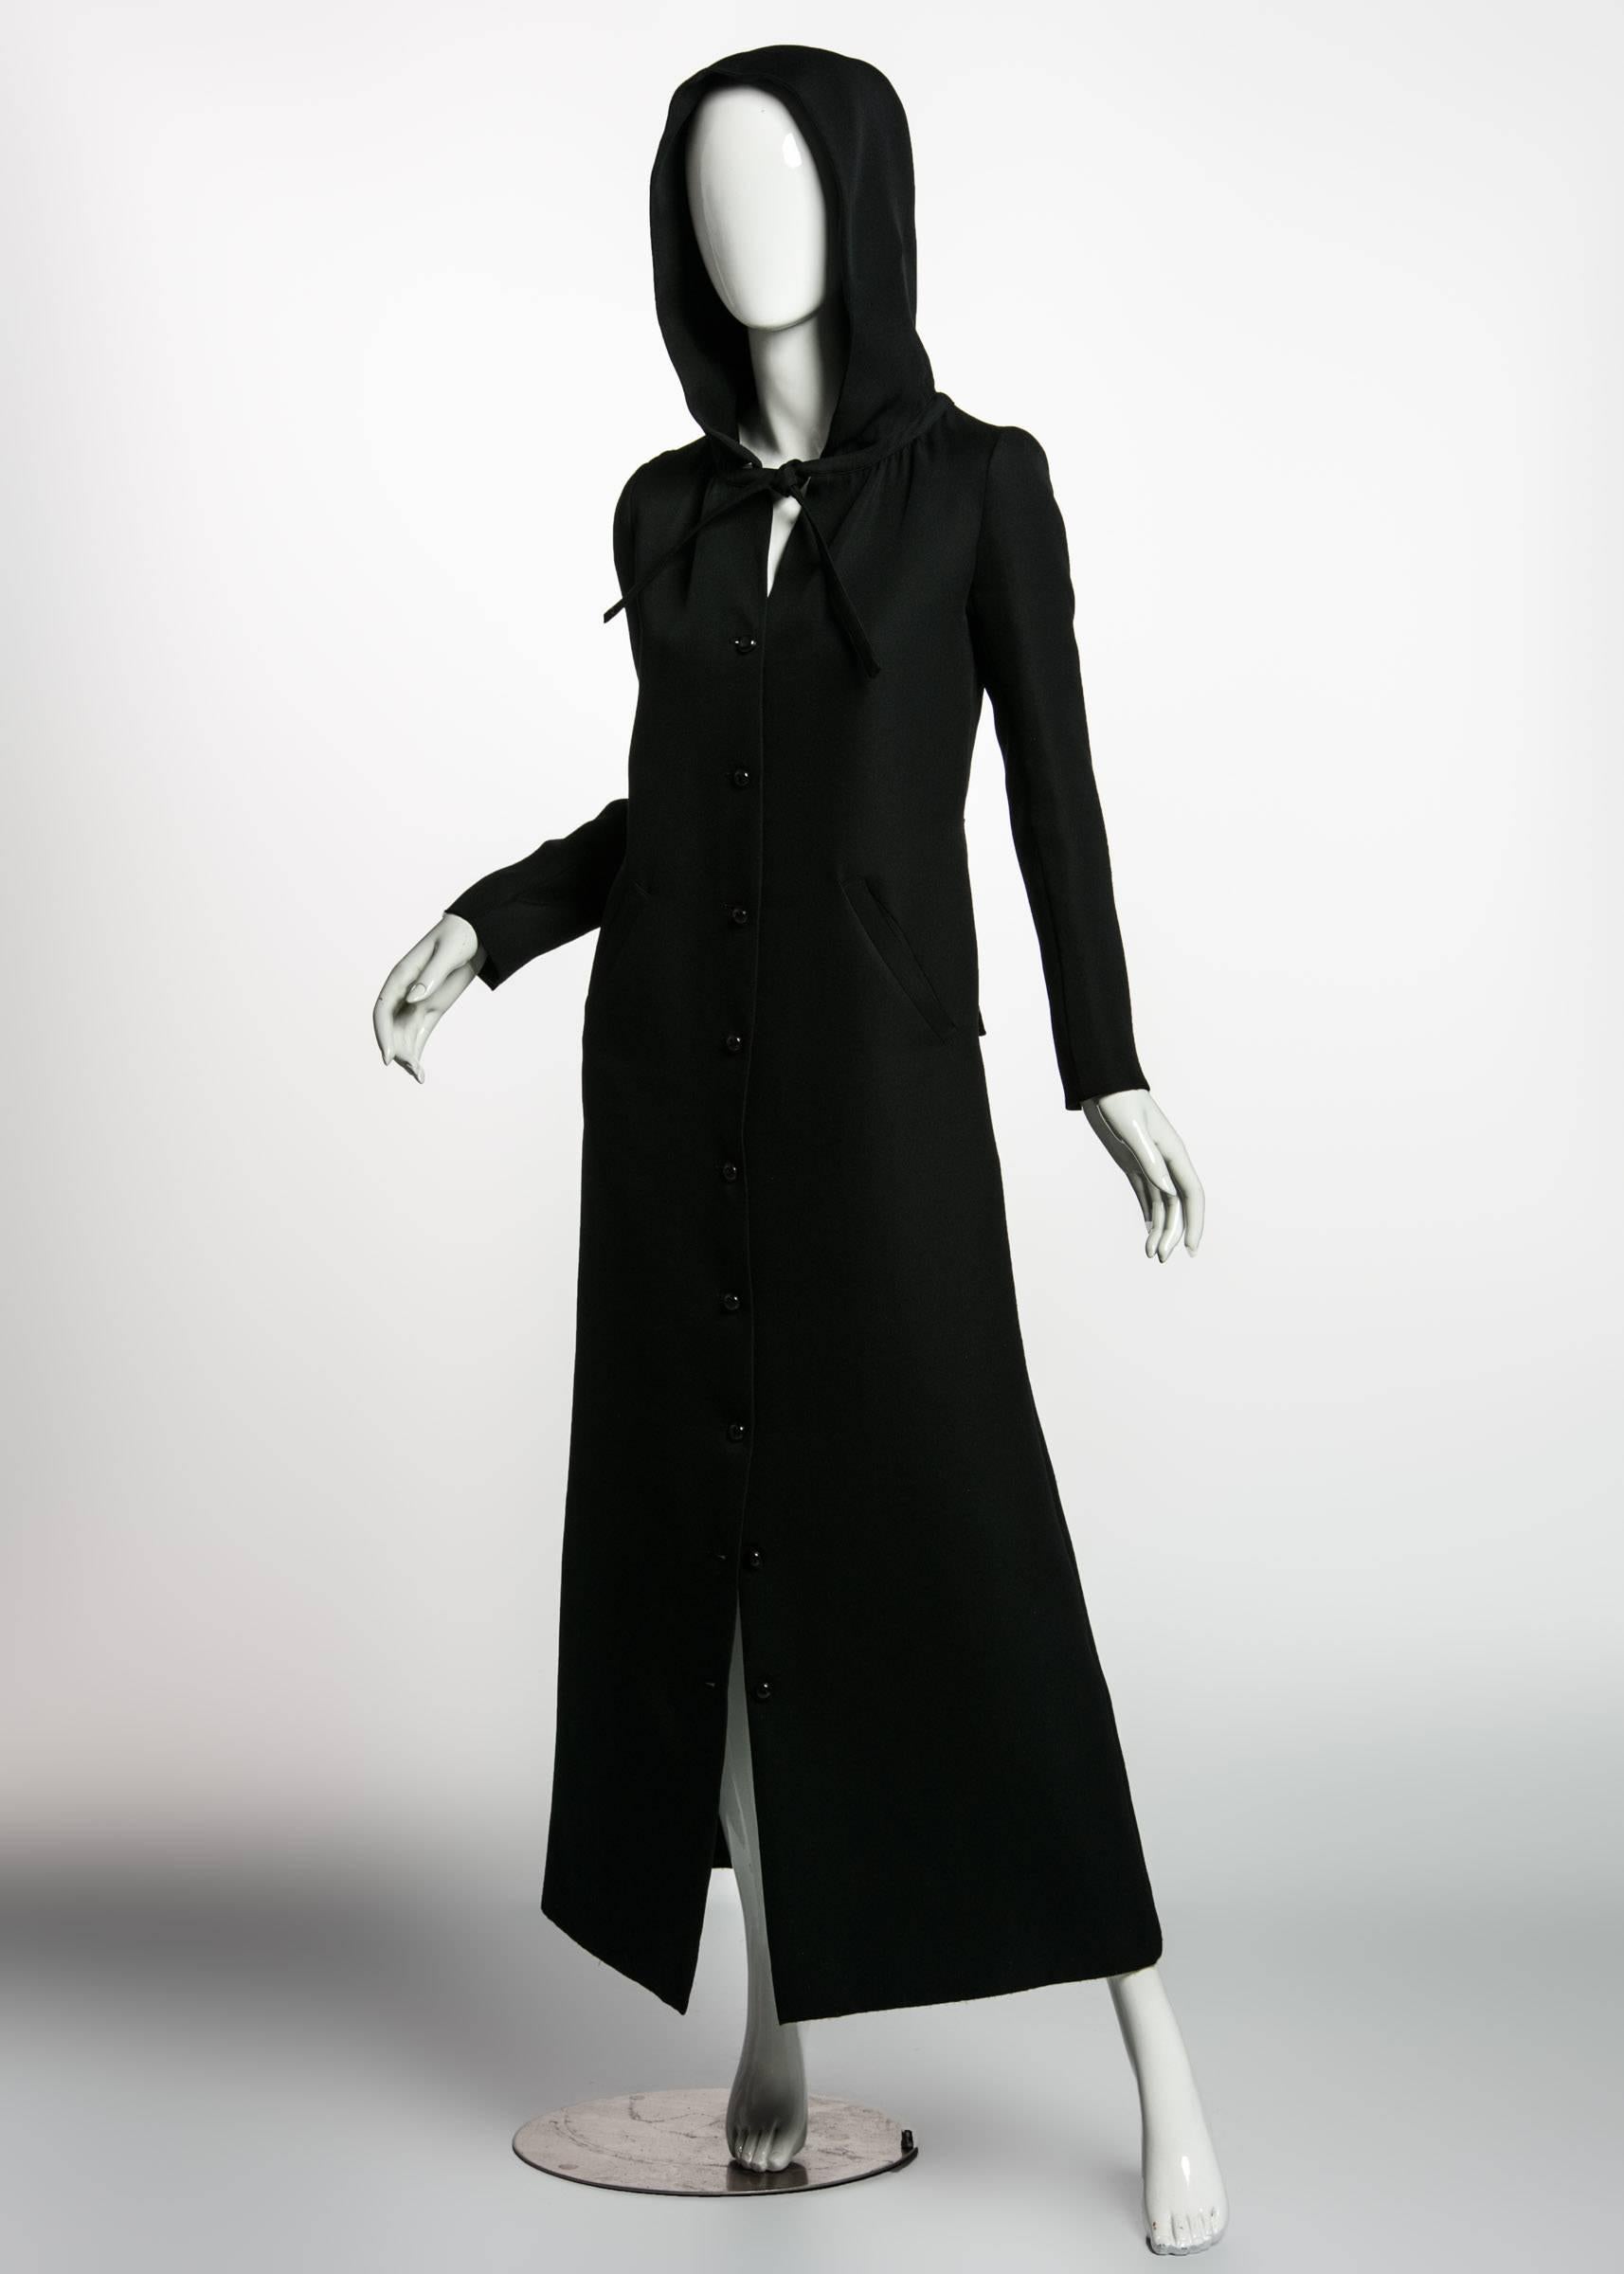 Women's 1960s Courrѐges Paris Mod Black Maxi Coat with Hood